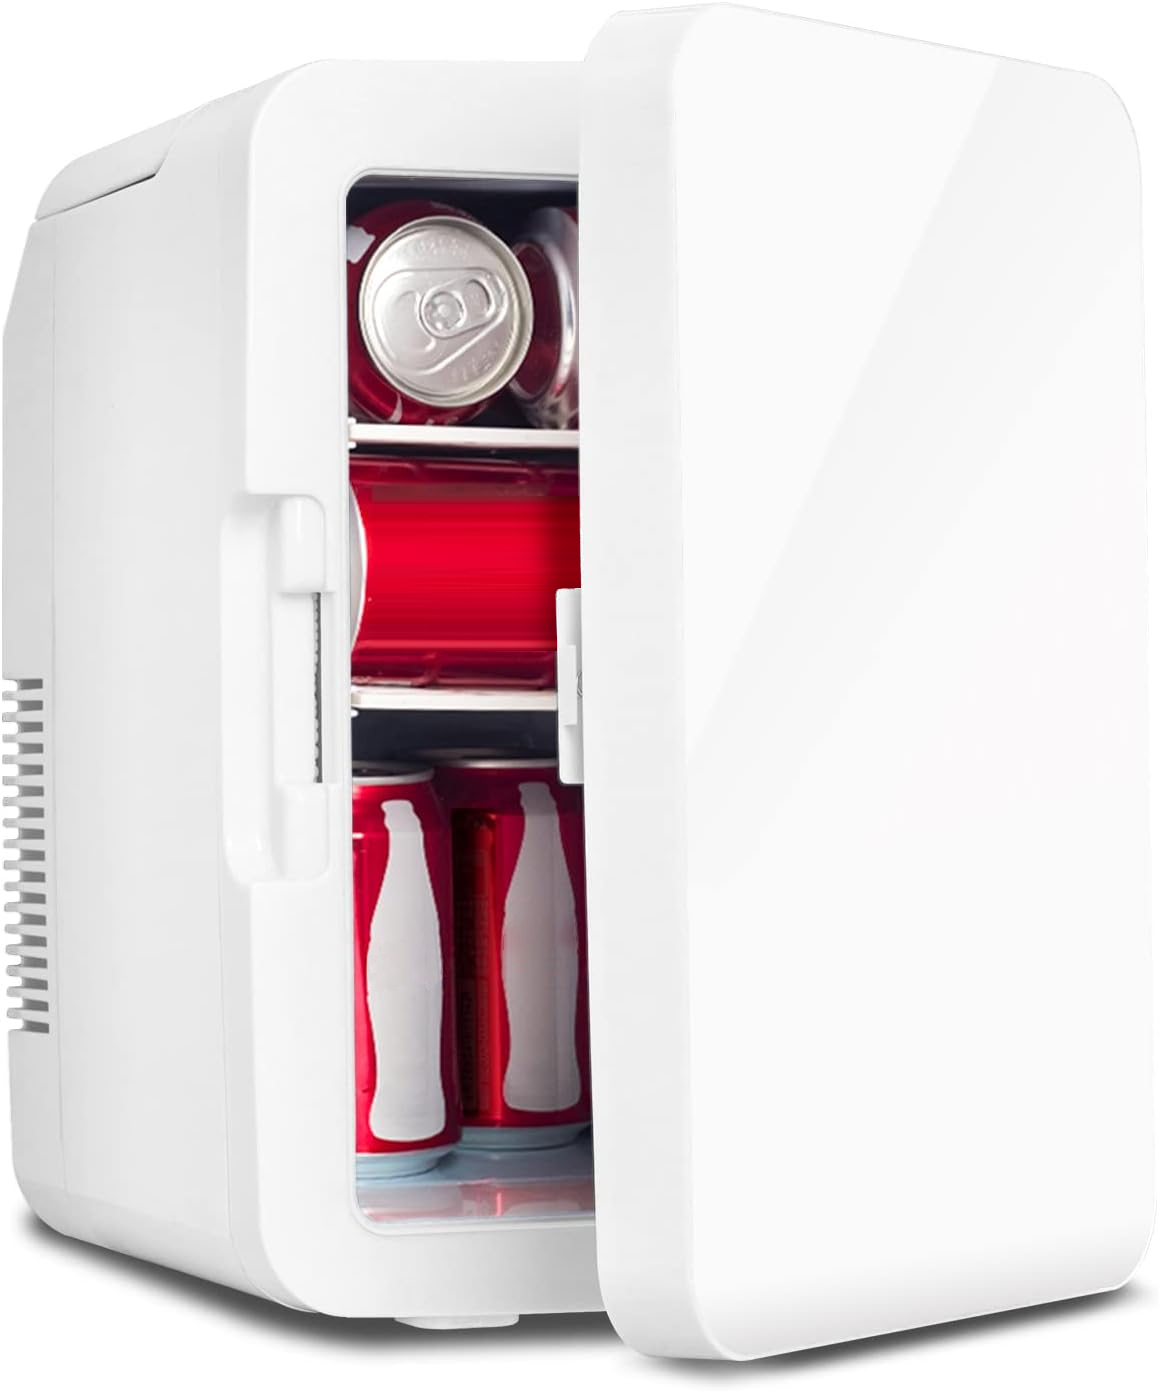 Puluomis Mini Kühlschrank 10L, 2 in 1 Warm- und Kühlbox tragbar 12V/220V / 230V Weiß